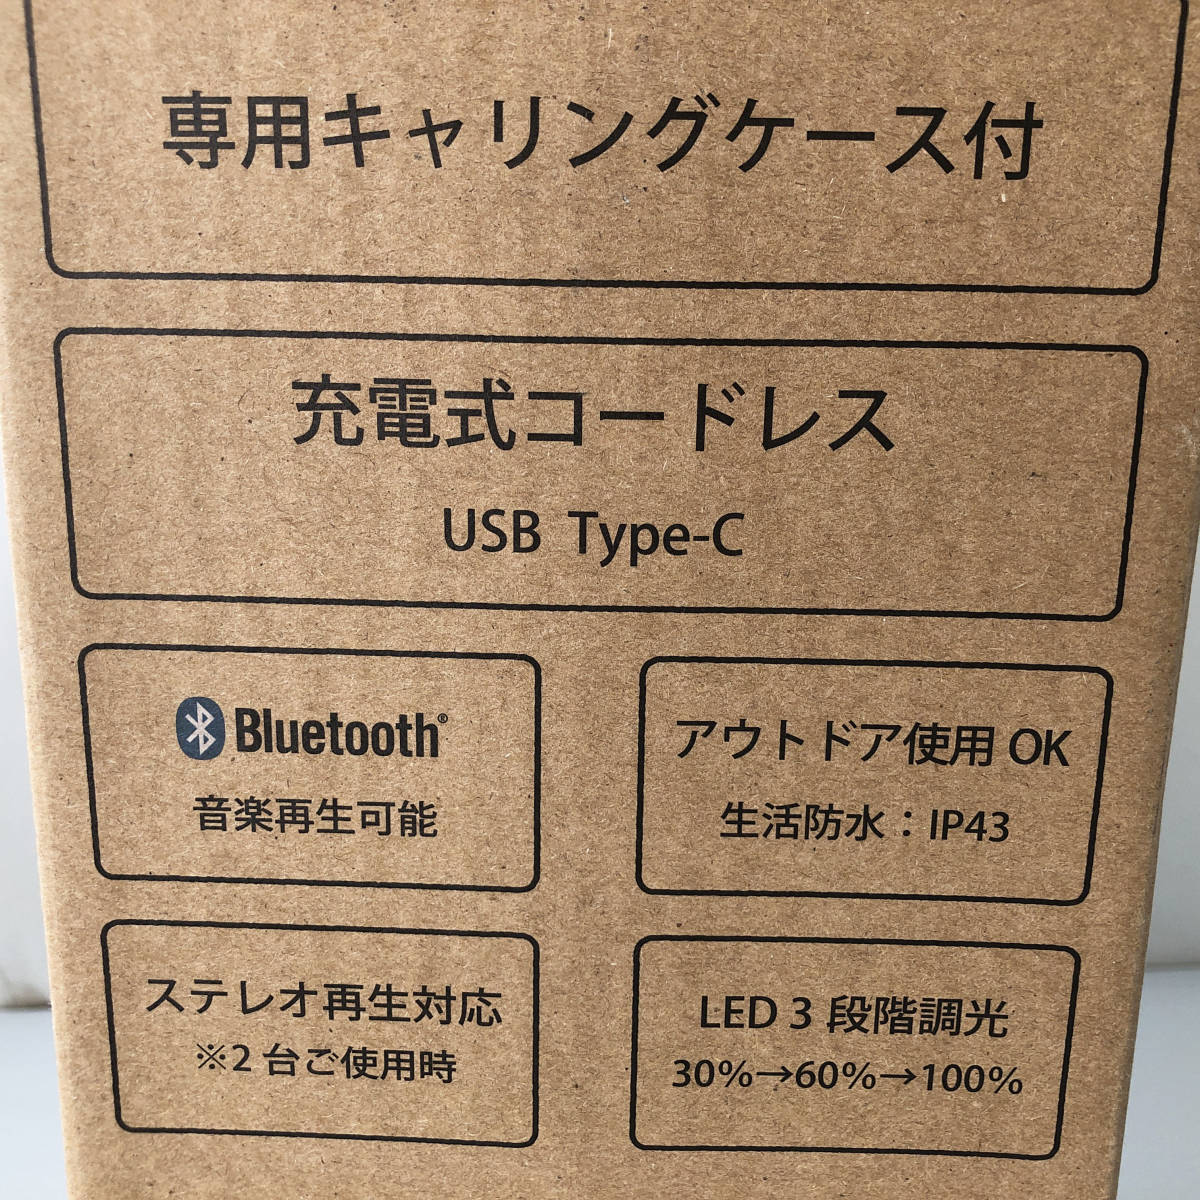 音TAN LEDランタン Bluetoothスピーカー DXL-81429C アウトドア 新品